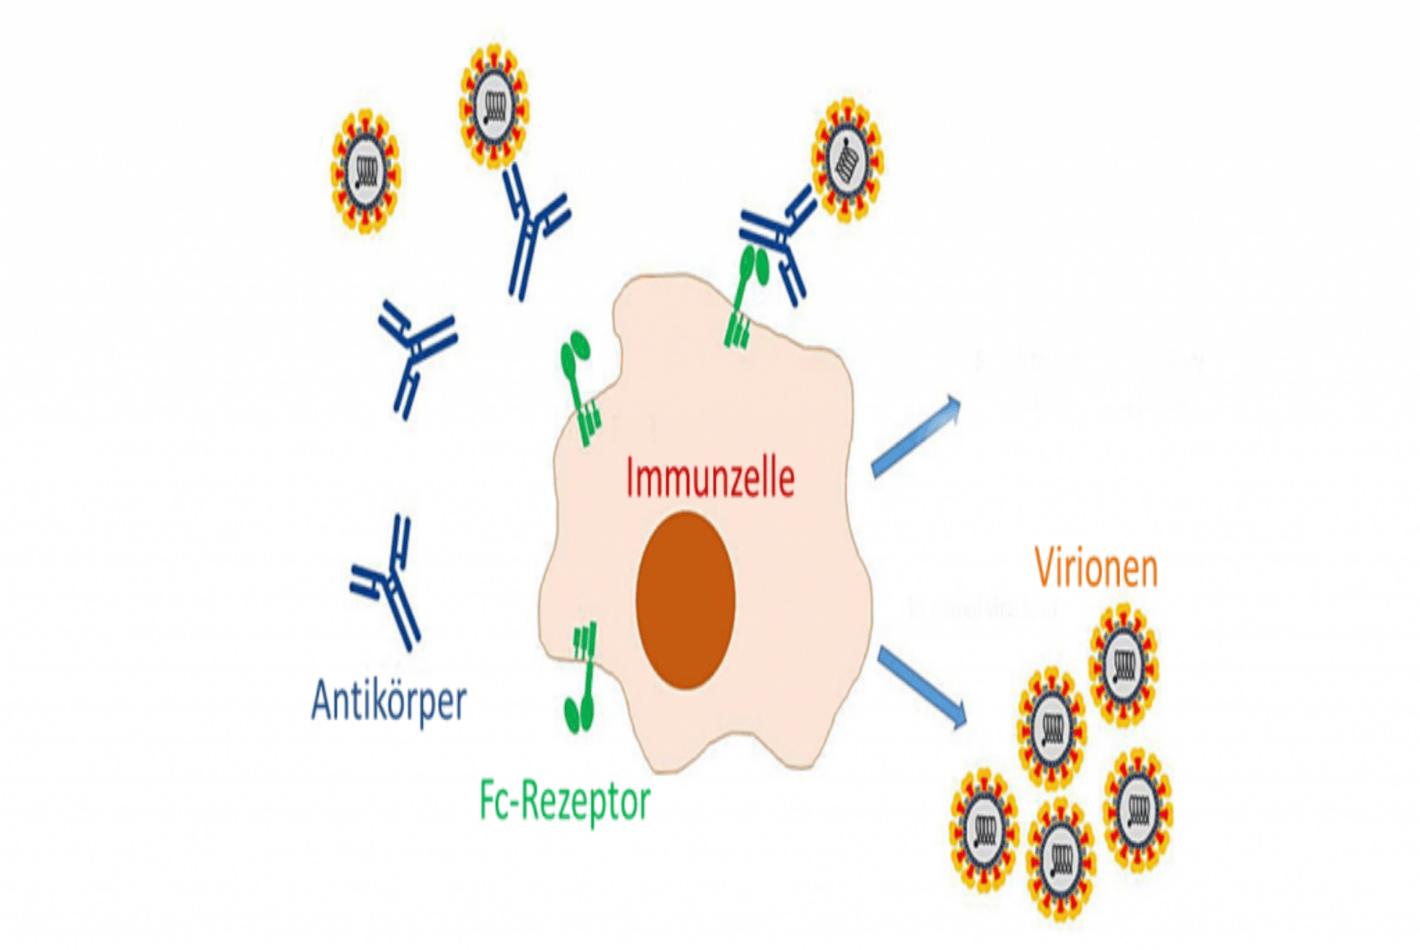 Schaubild zur Imunzelle